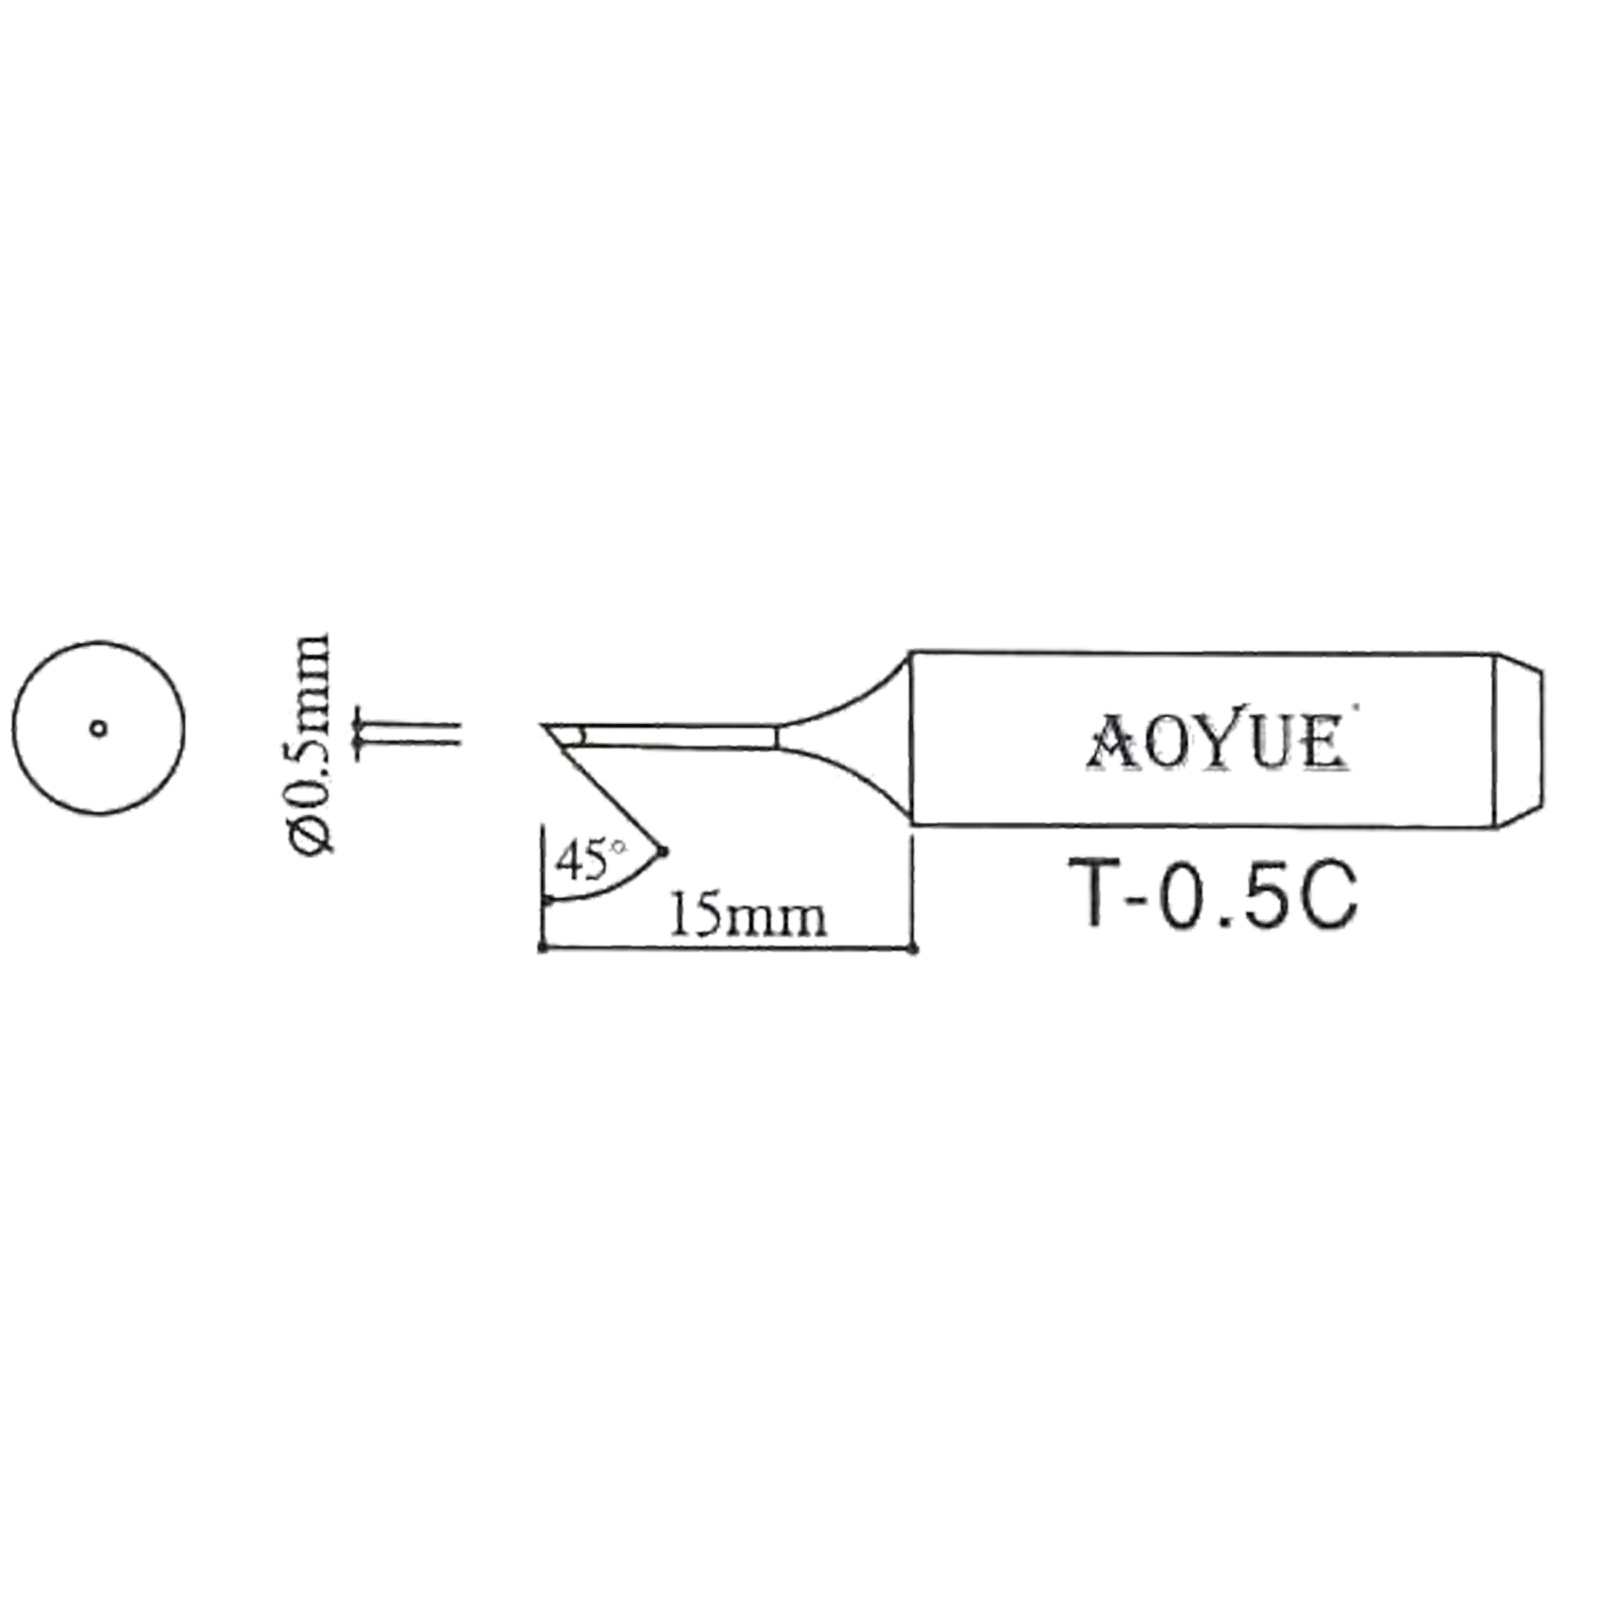 AOYUE T-0.5C Lötspitze für Lötkolben R 0.5mm / 45°